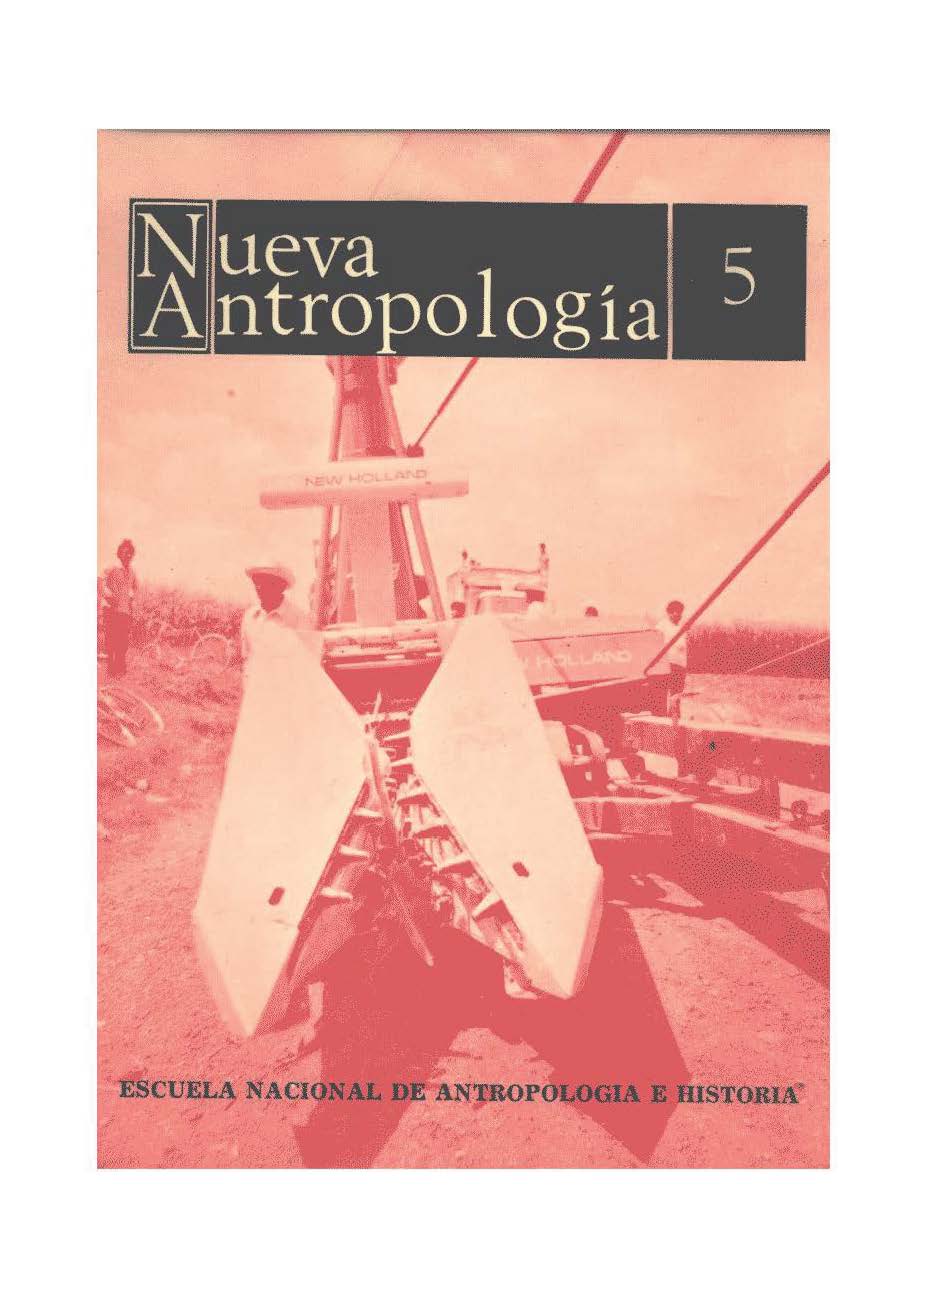 Vol. 2, Núm. 5 (1976): Capitalismo, Antropología y Estado